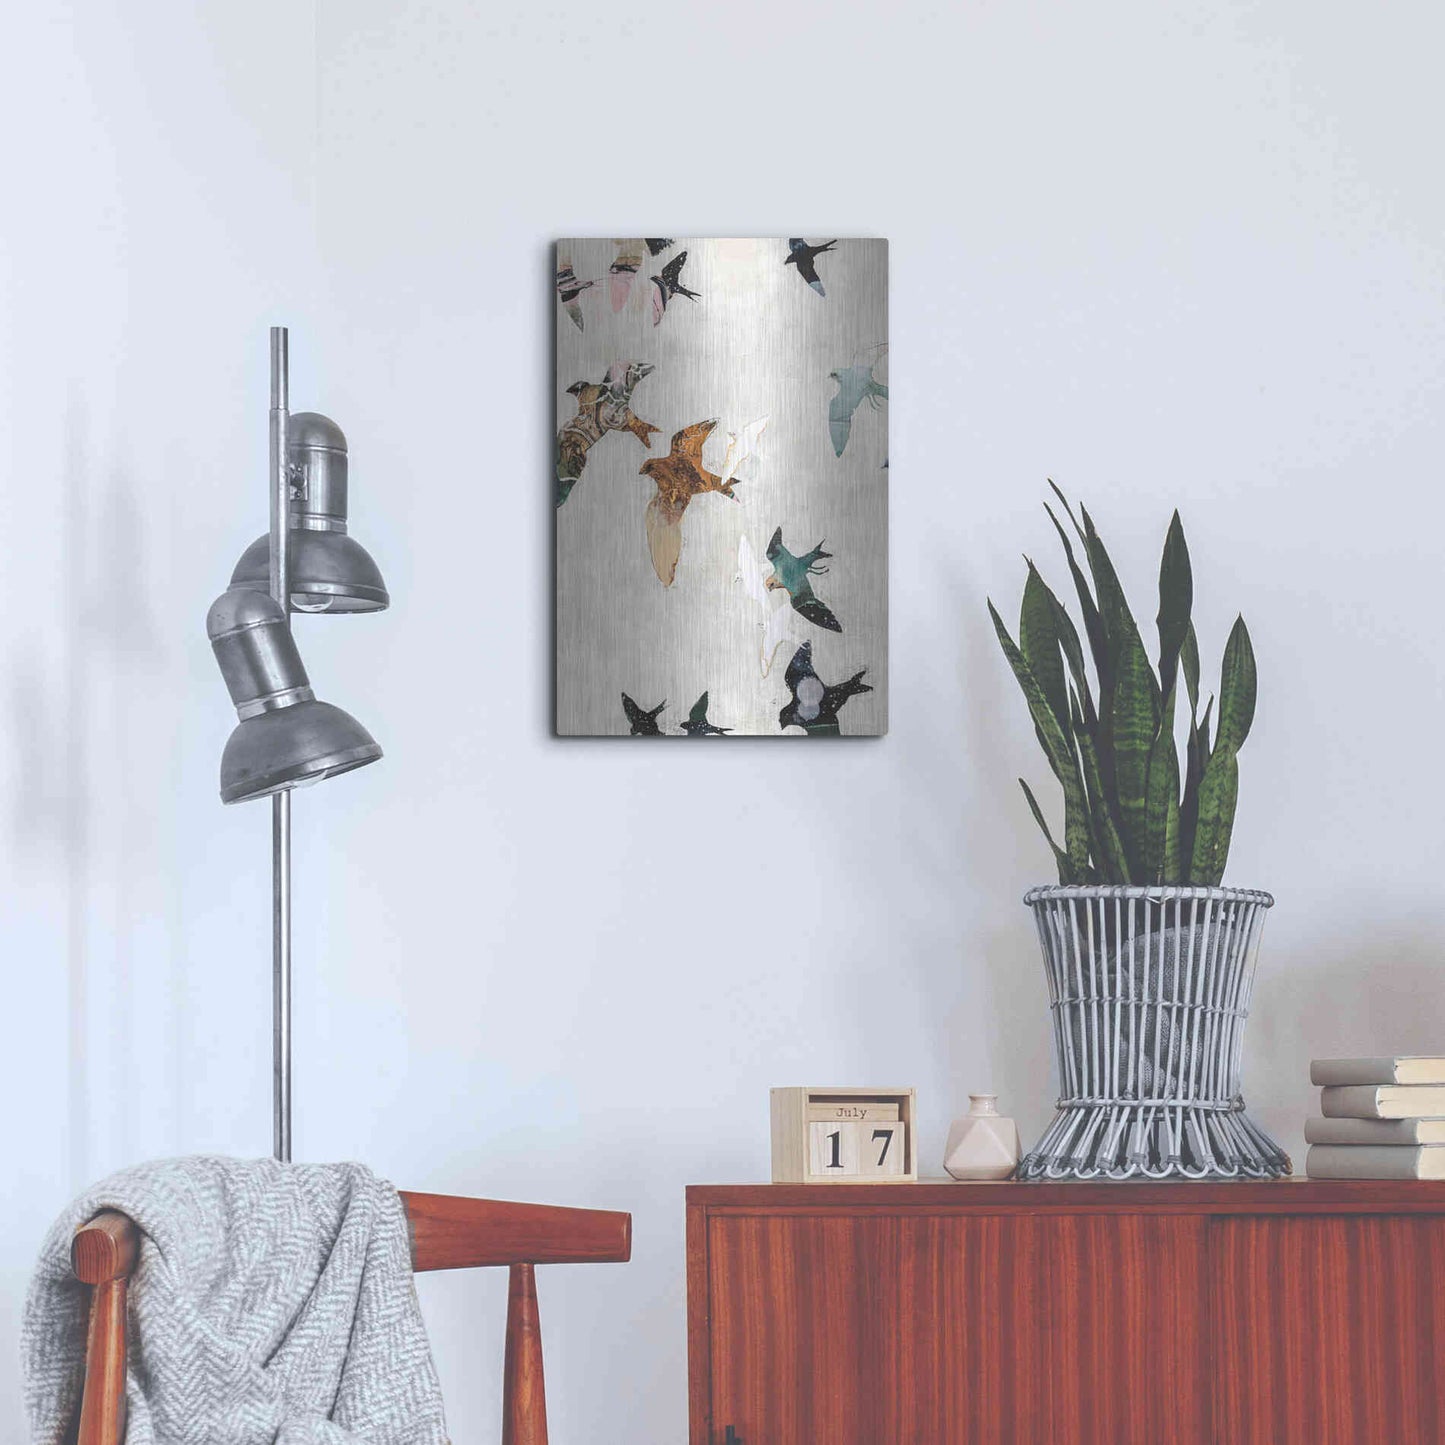 Luxe Metal Art 'Abstract Birds 1' by Design Fabrikken, Metal Wall Art,16x24